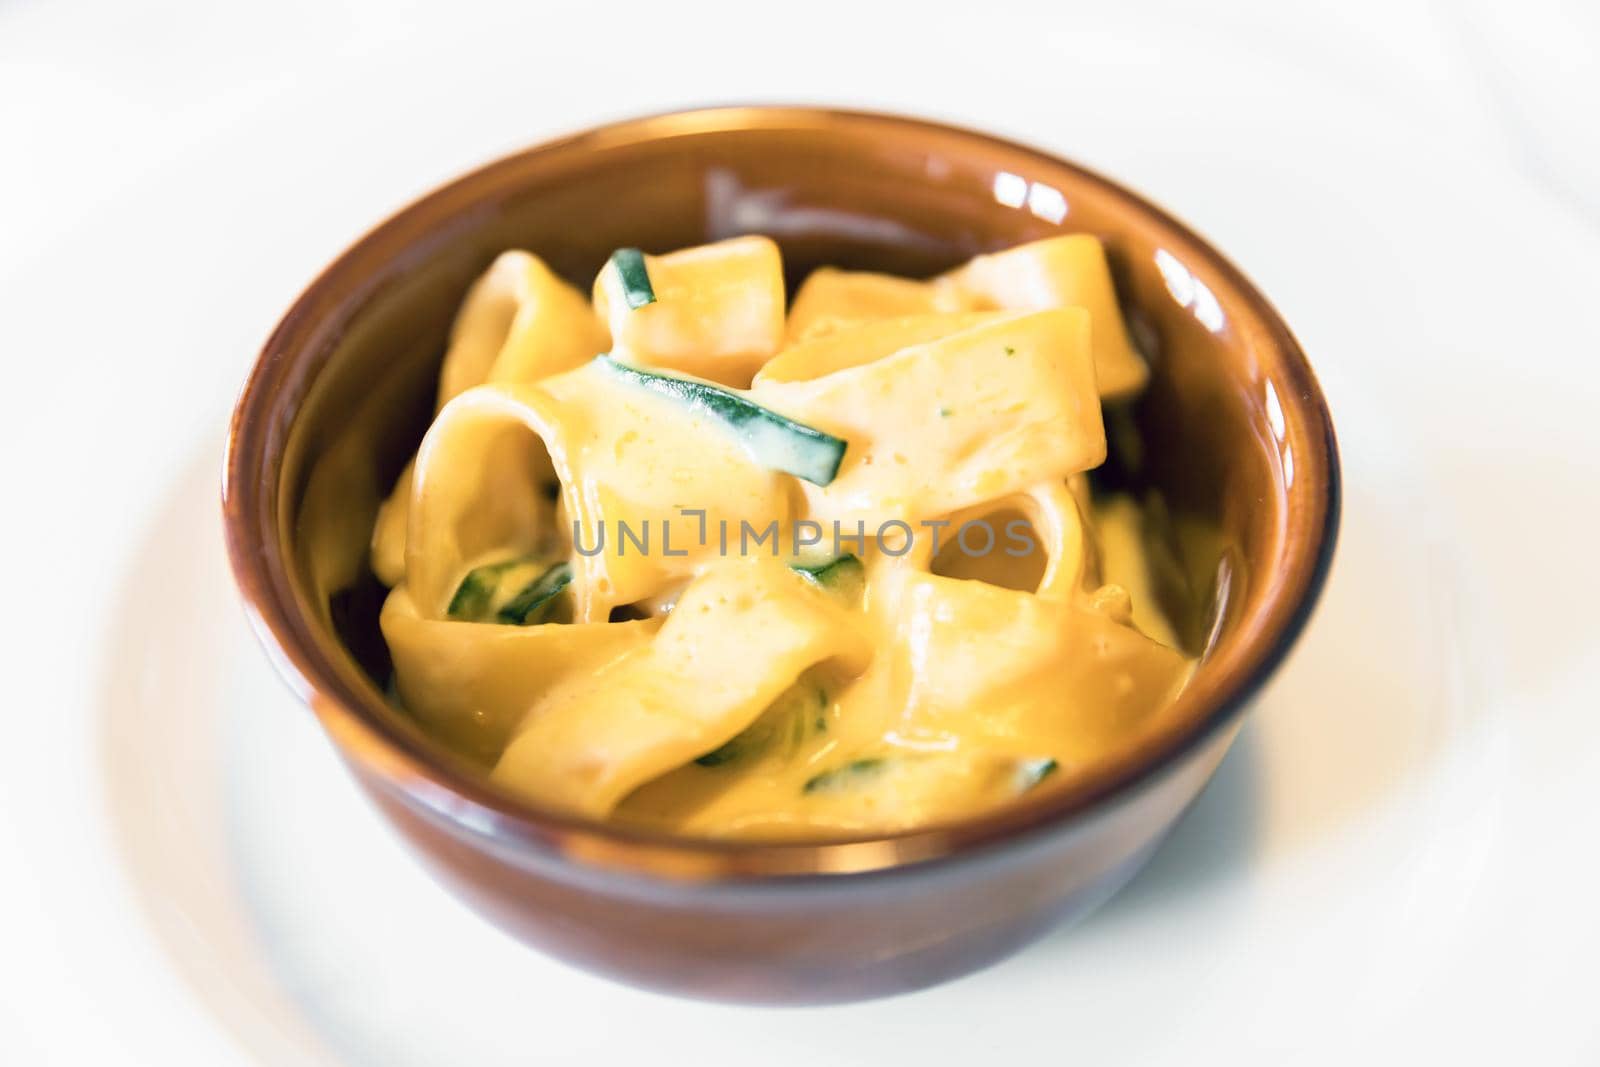 Calamarata pasta (macaroni) with cream and zucchini